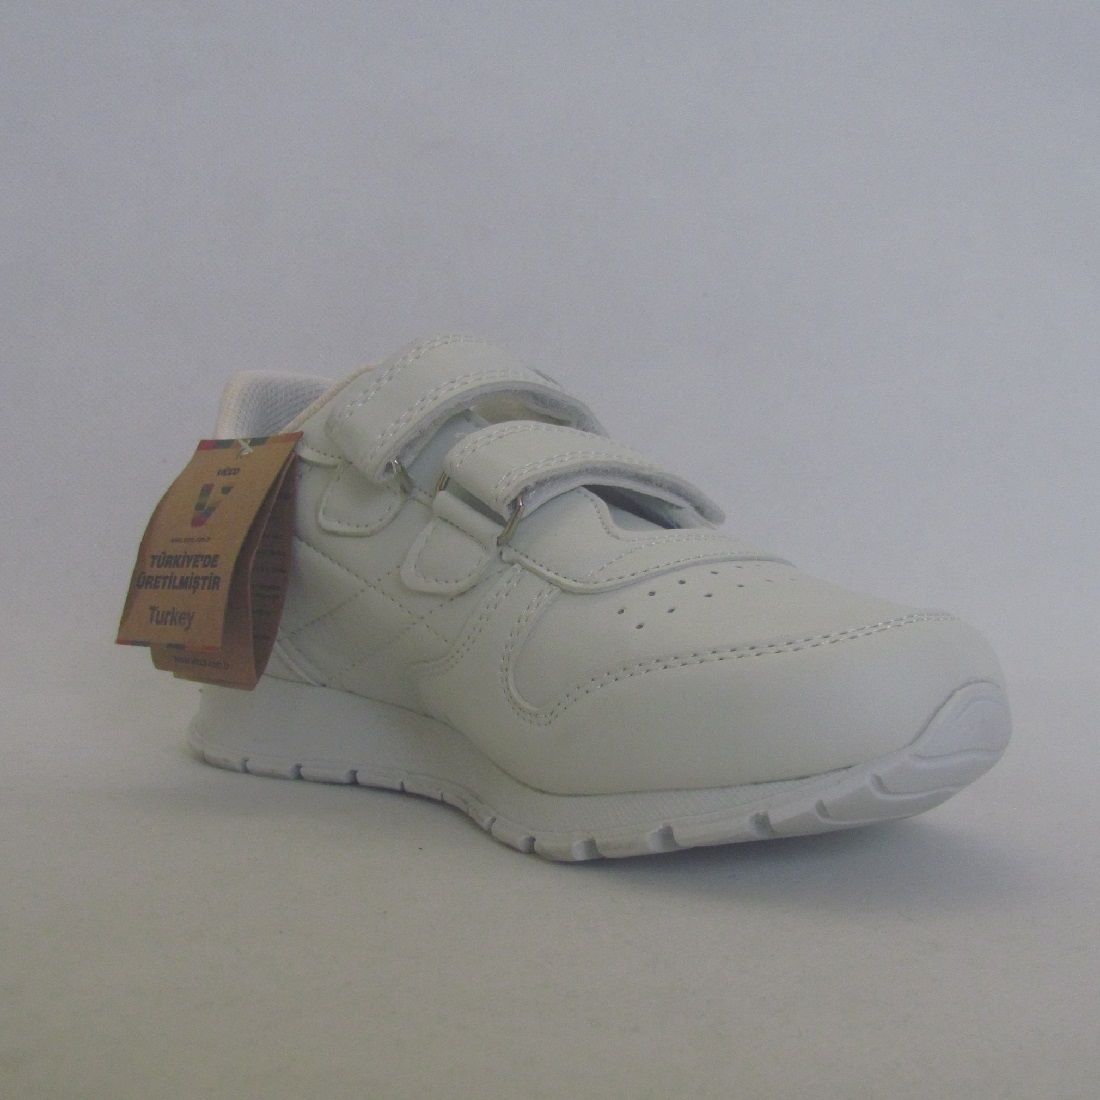  کفش مخصوص پیاده روی ویکو مدل 938.149 -  - 4